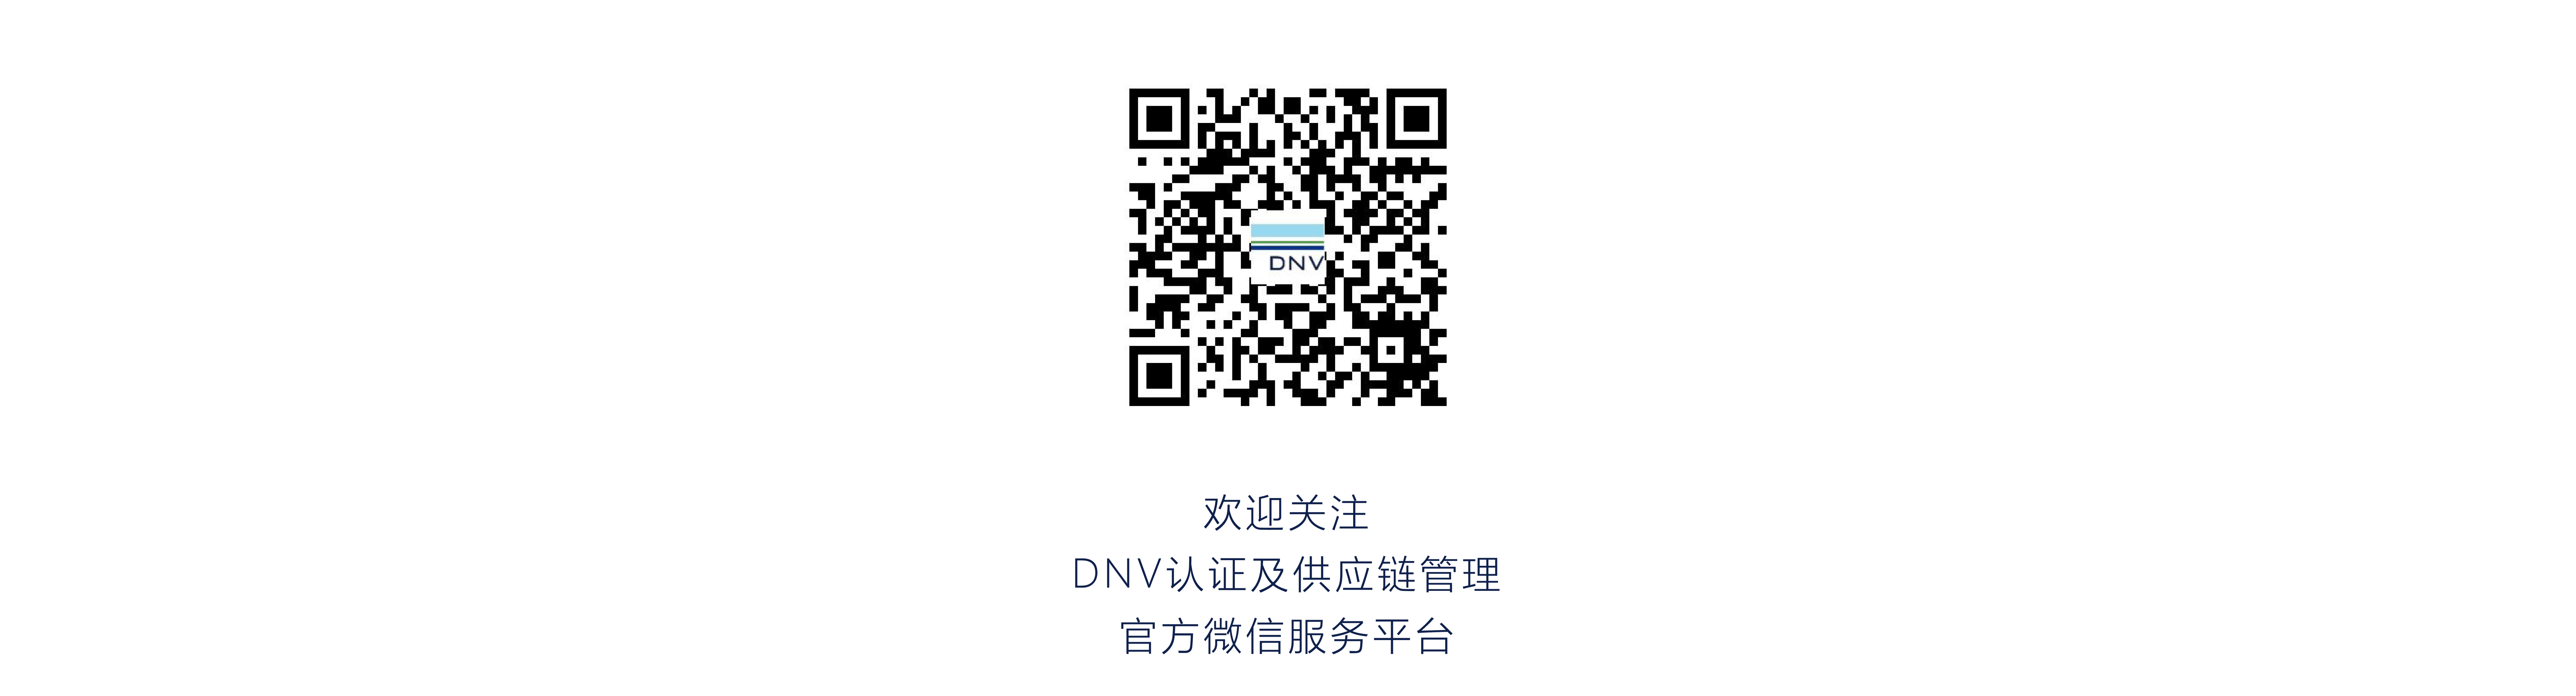 DNV Wechat Account QR Code 